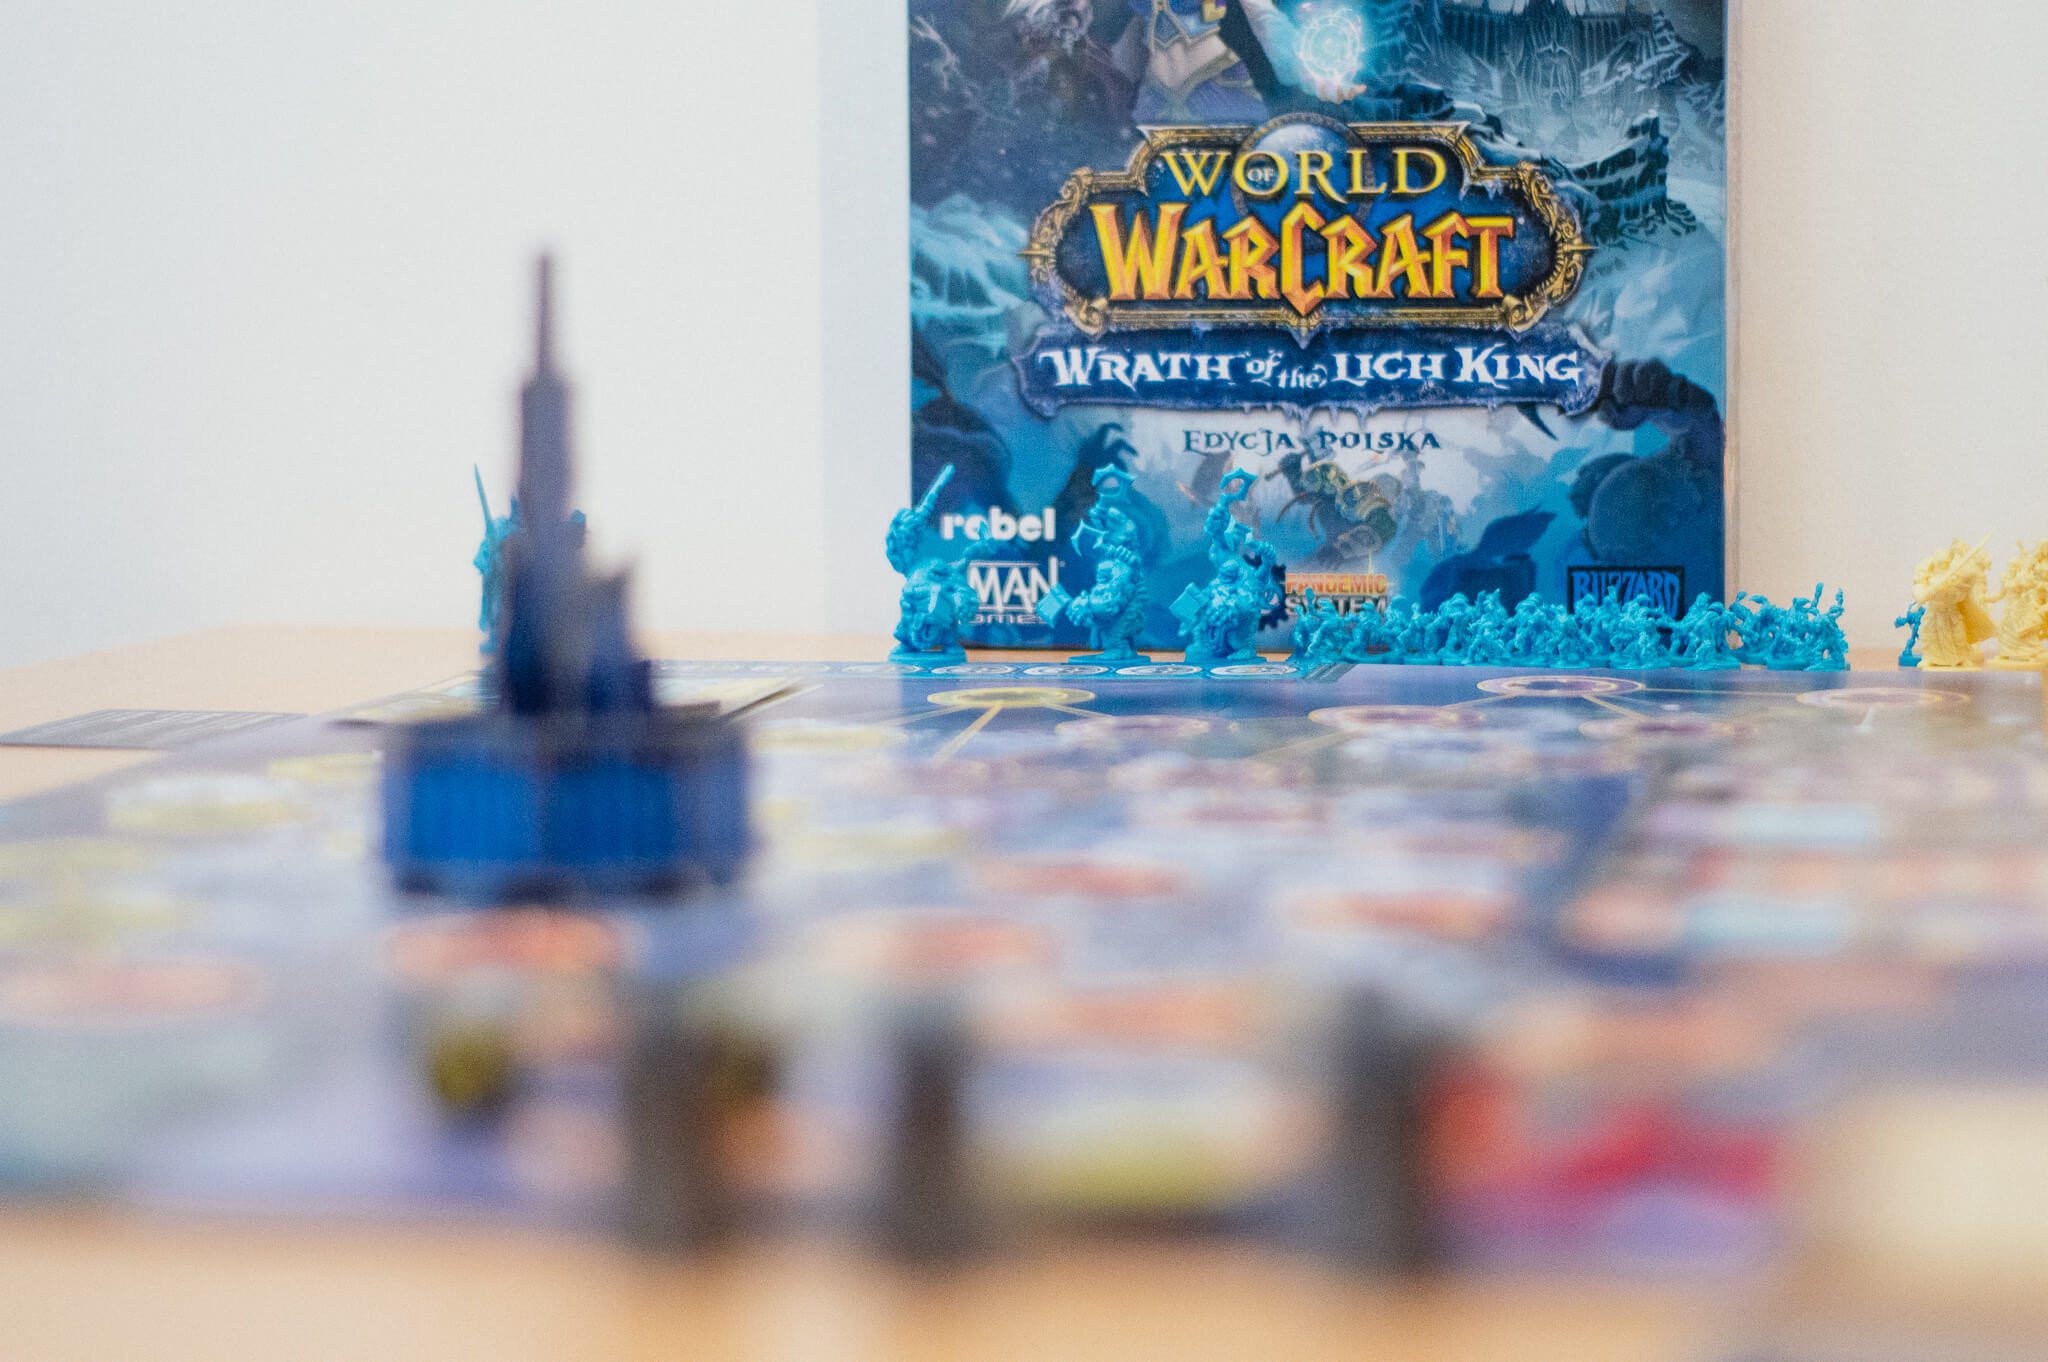 Kiedy Horda jednoczy się z Przymierzem, aby zabić wspólnego wroga. „World of Warcraft: Wrath of the Lich King” – recenzja gry planszowej